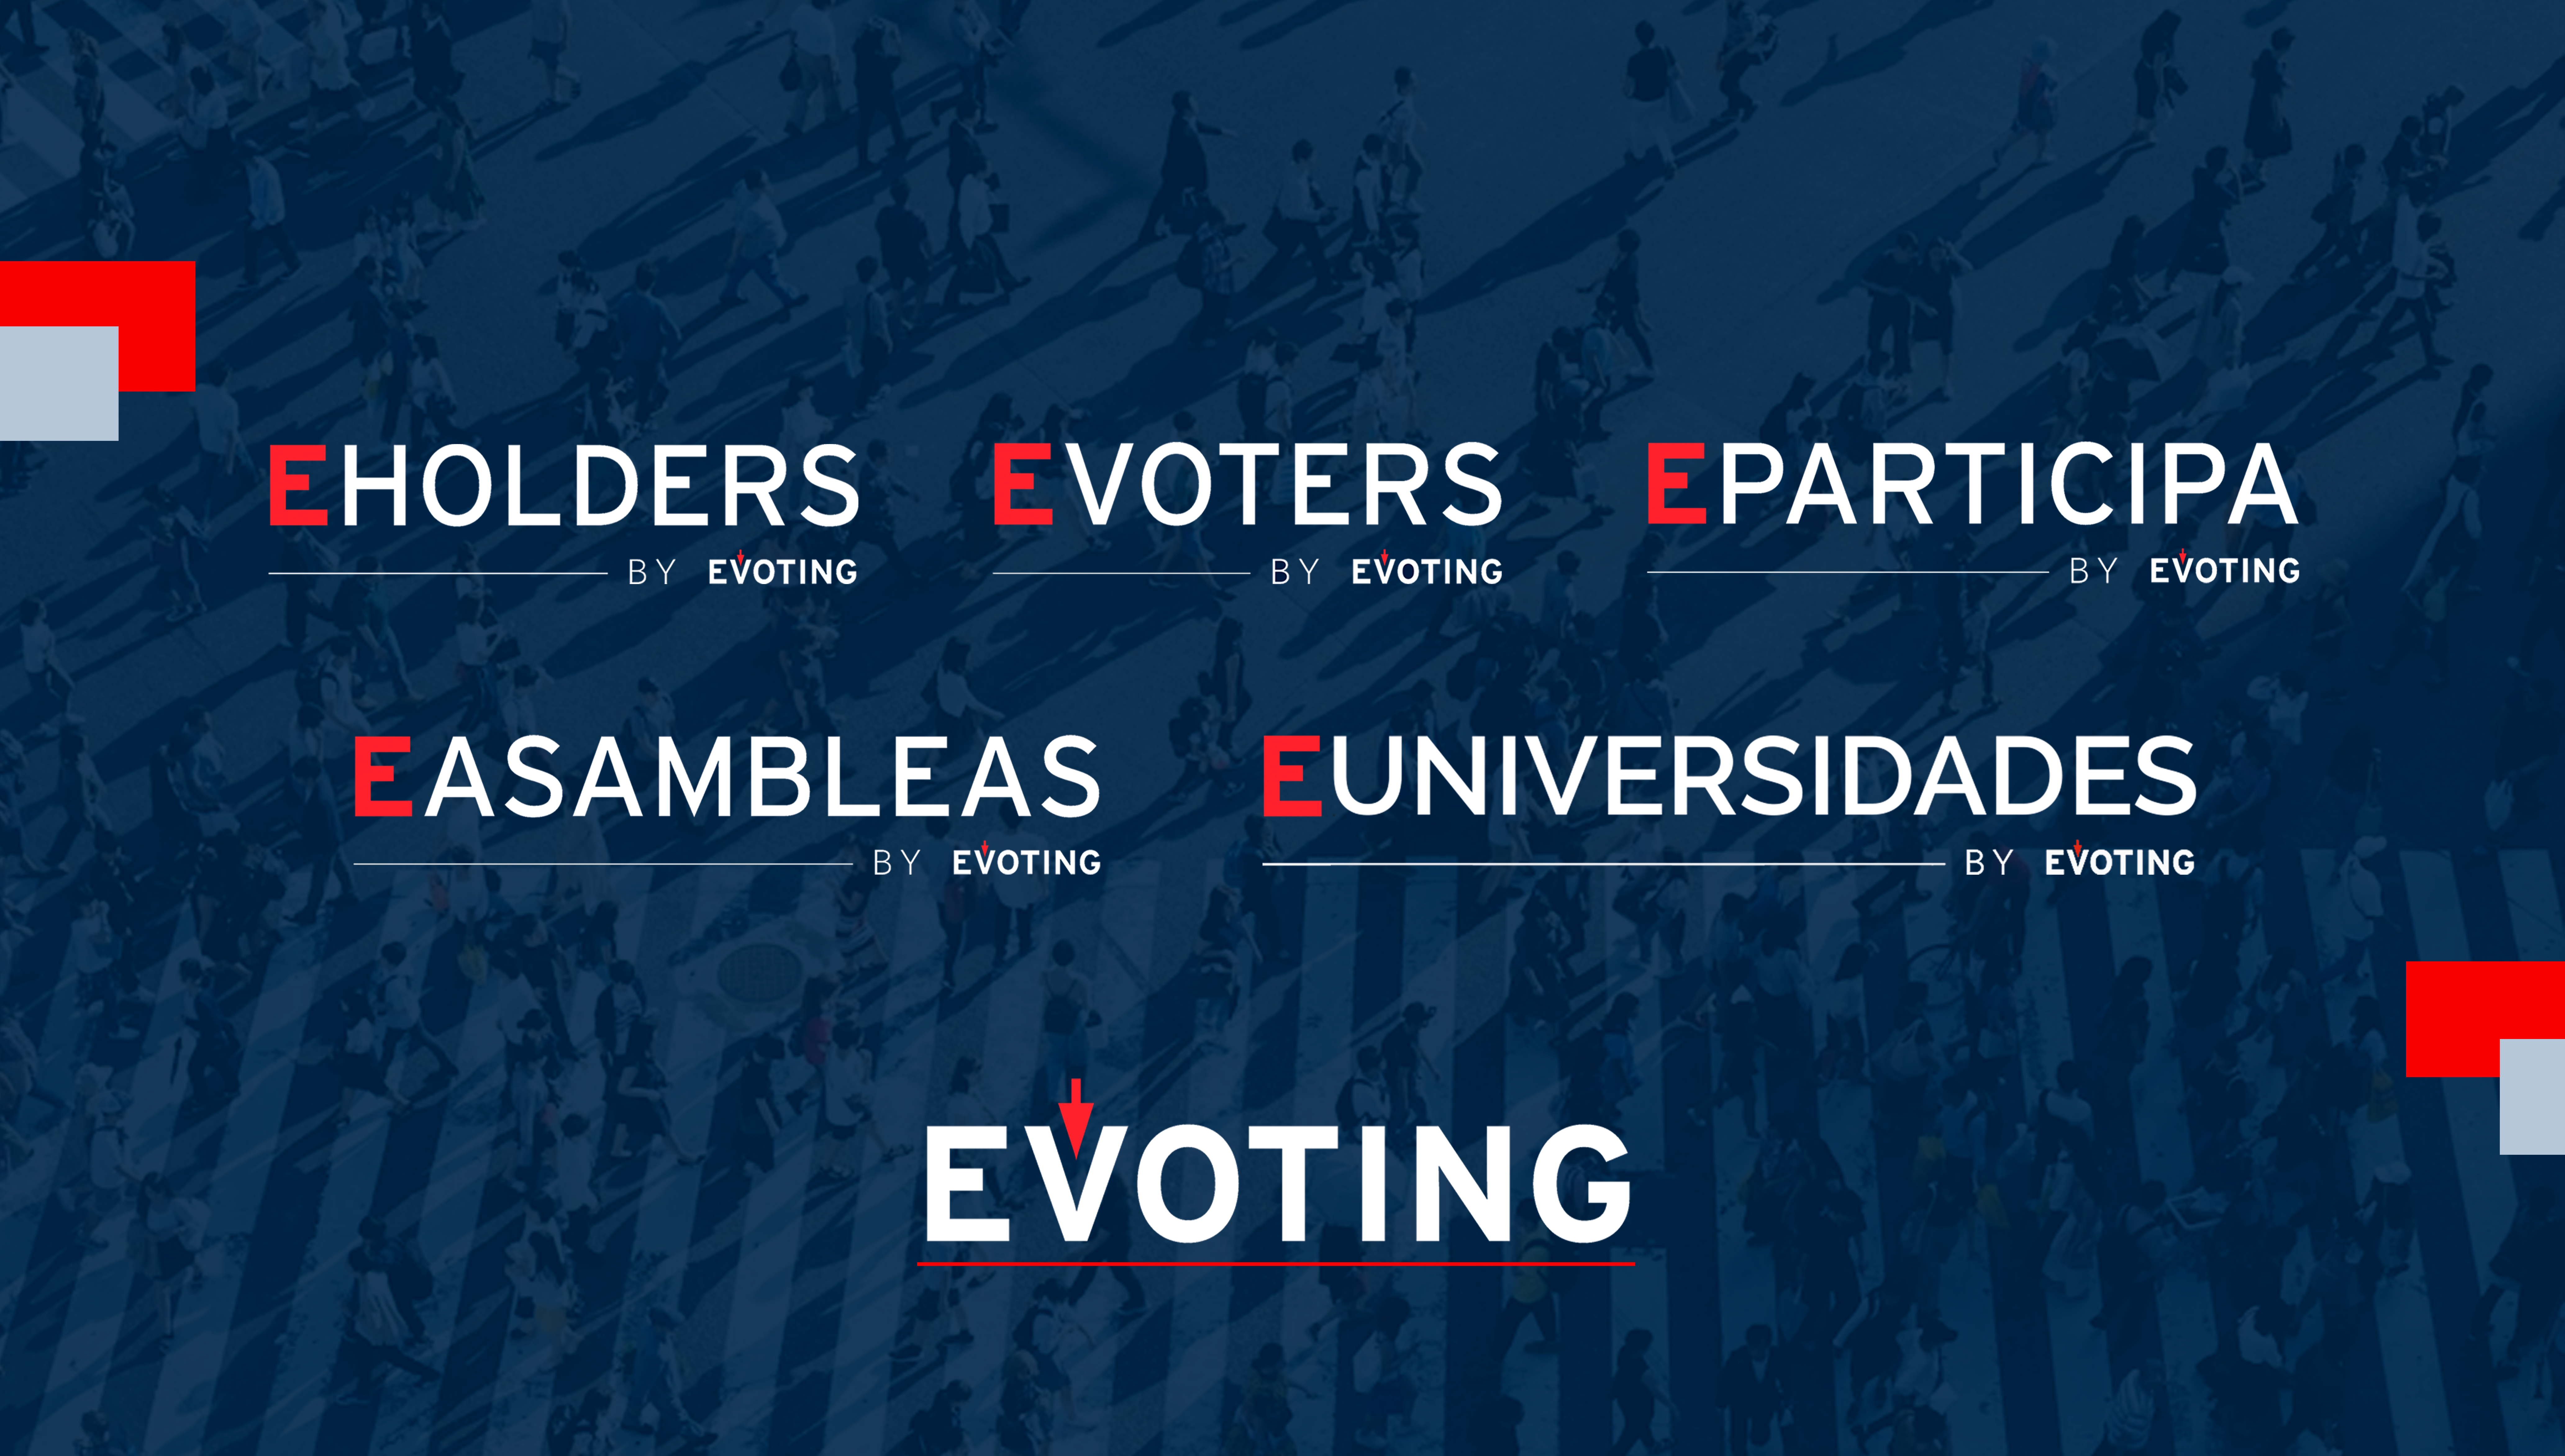 Las 5 plataformas de EVoting: EVoters, EHolders, EAsambleas, EParticipa y EUniversidades